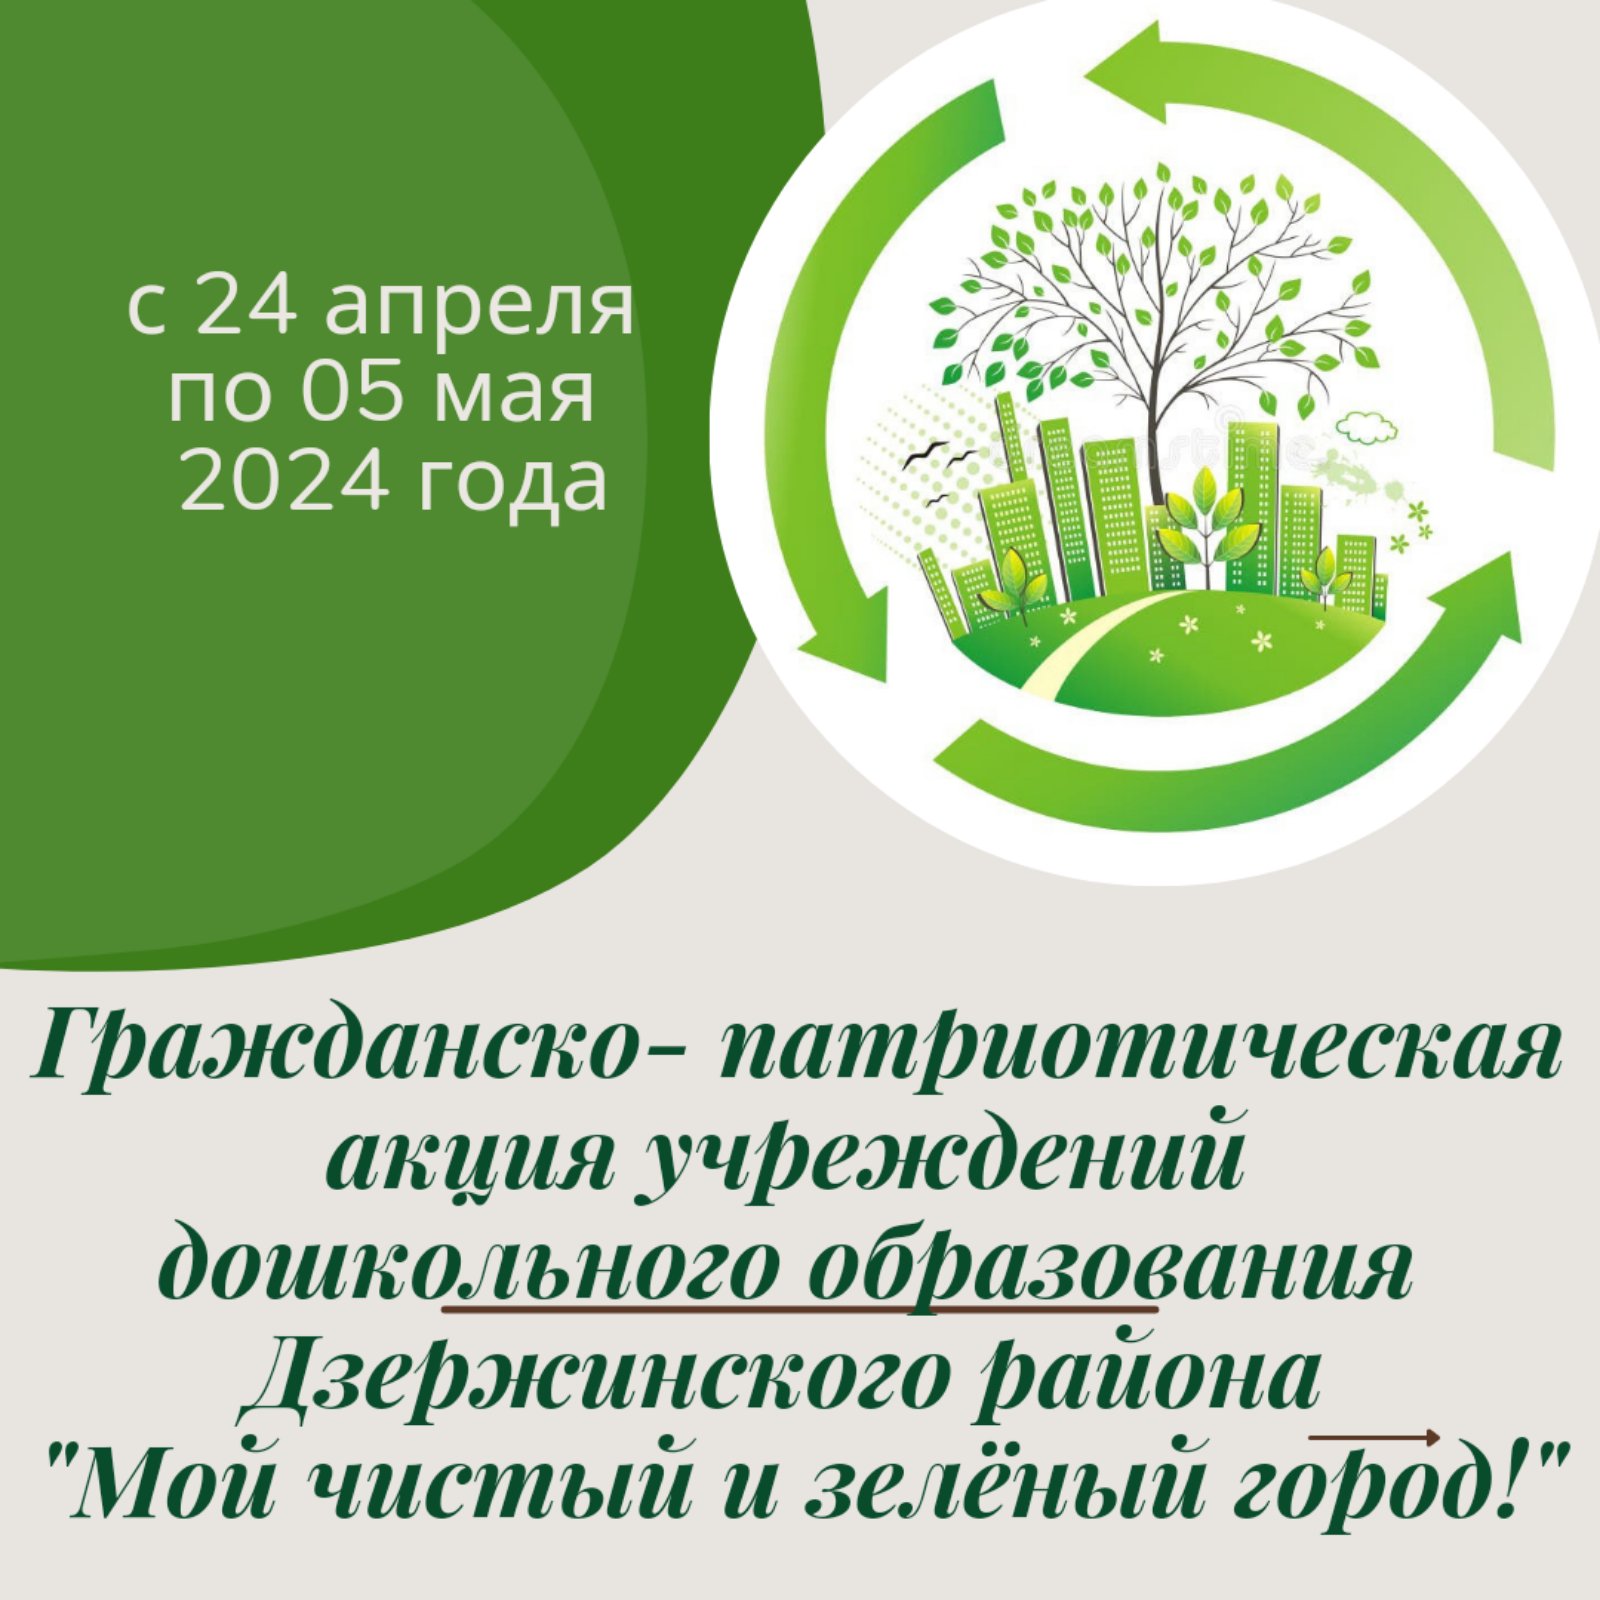 Участие в акции "Мой чистый и зеленый город" 